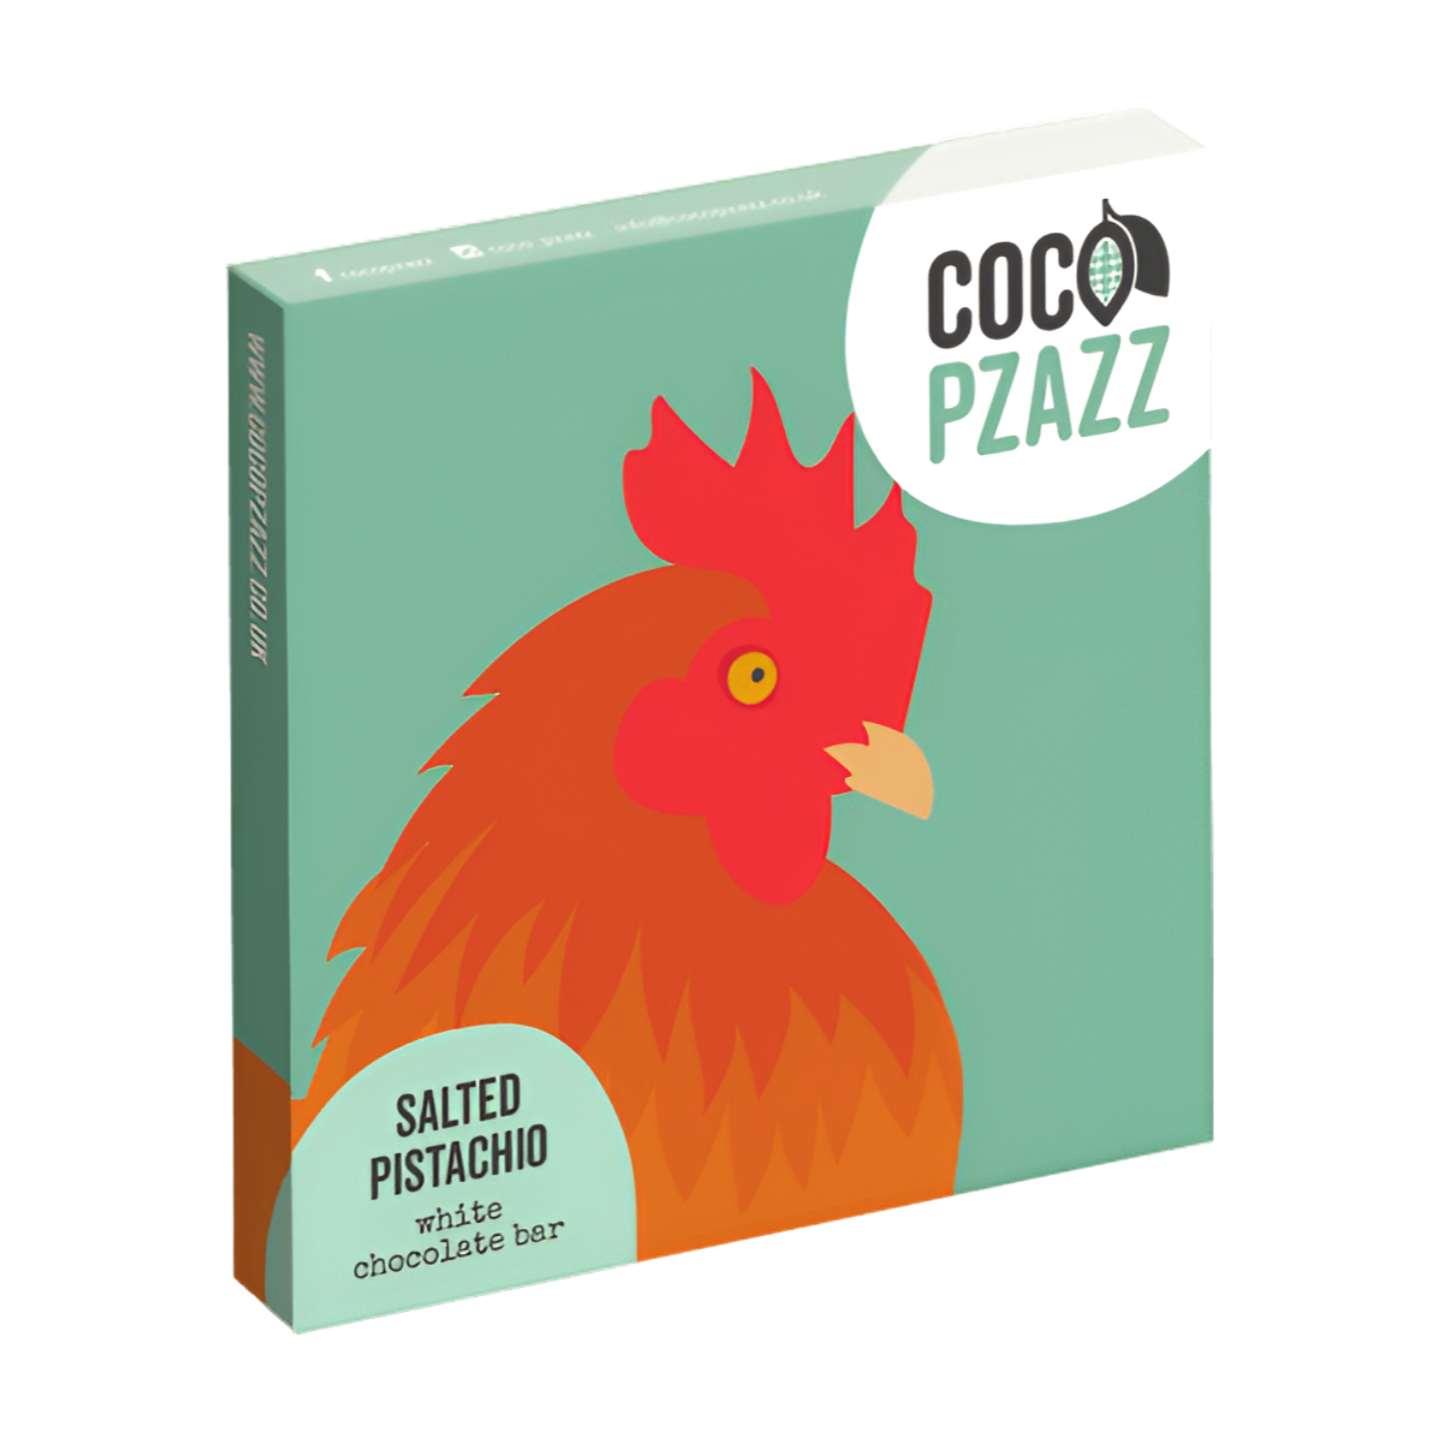 Coco Pzazz 'Chicken' Salted Pistachio White Chocolate Bar (80g)